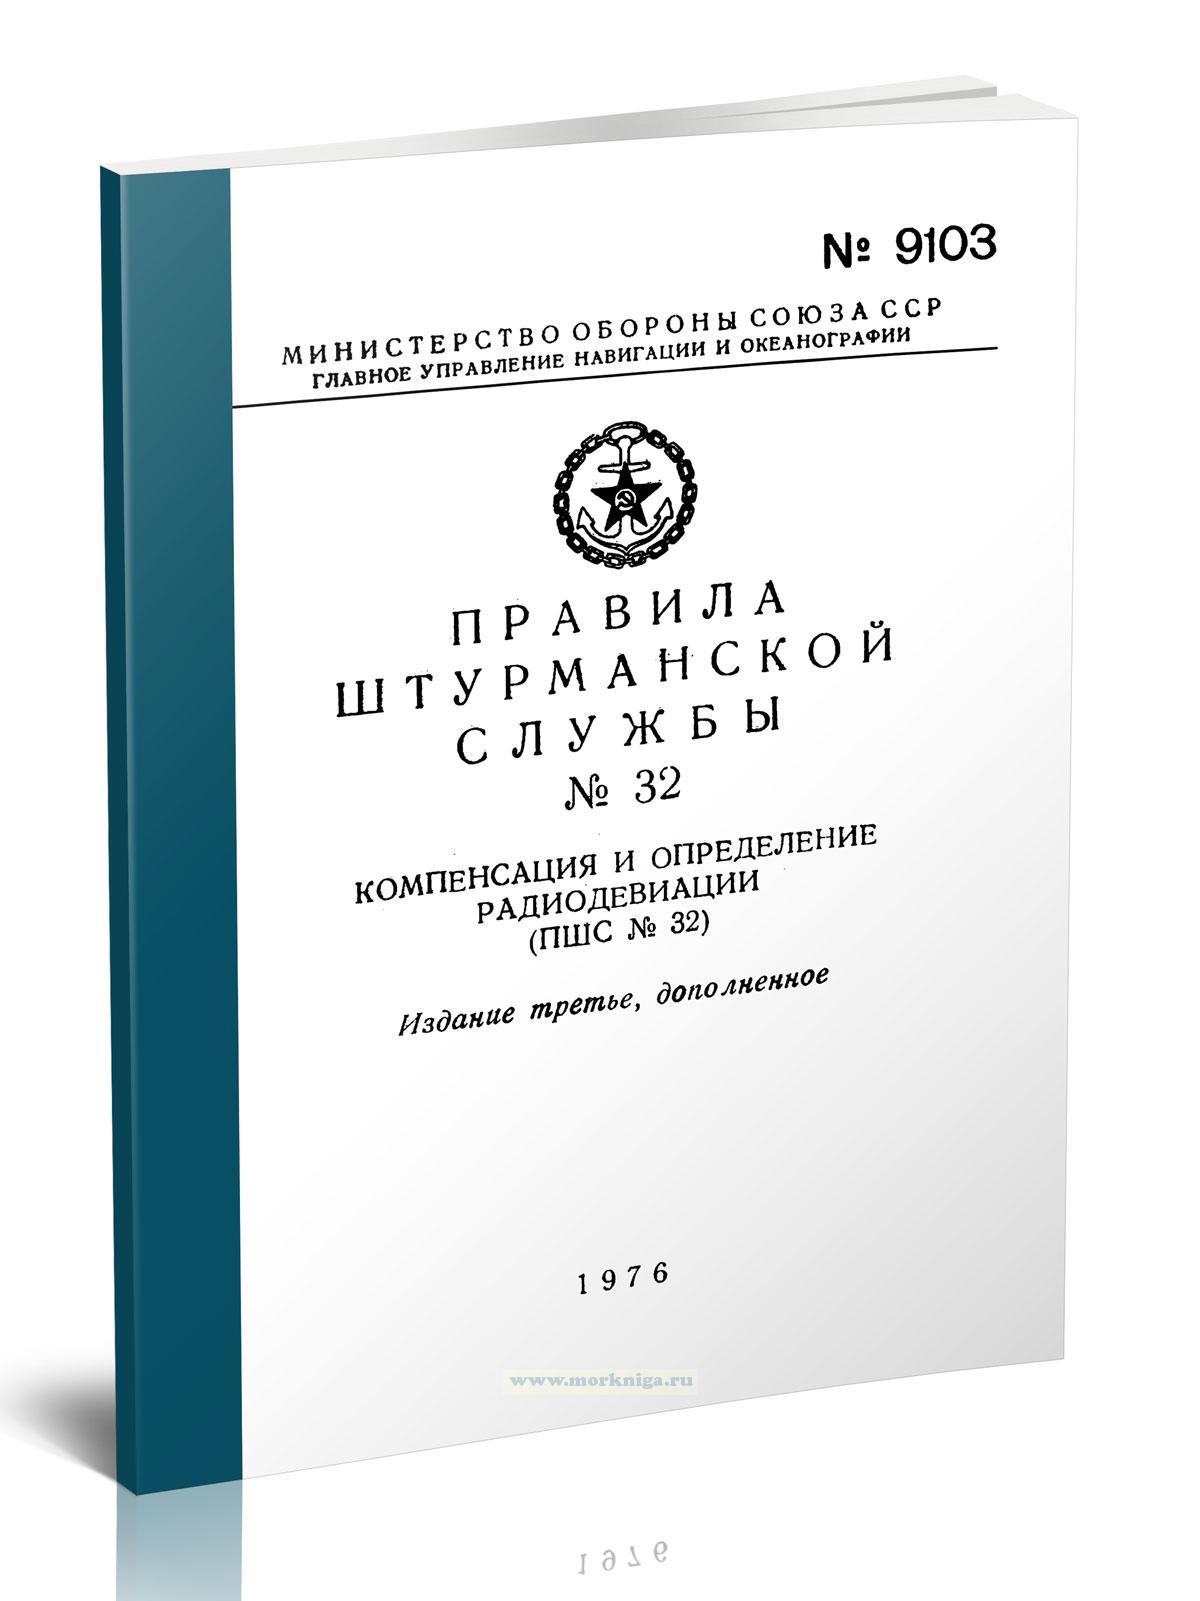 Правила штурманской службы №32. Компенсация и определение радиодевиации (ПШС № 32)